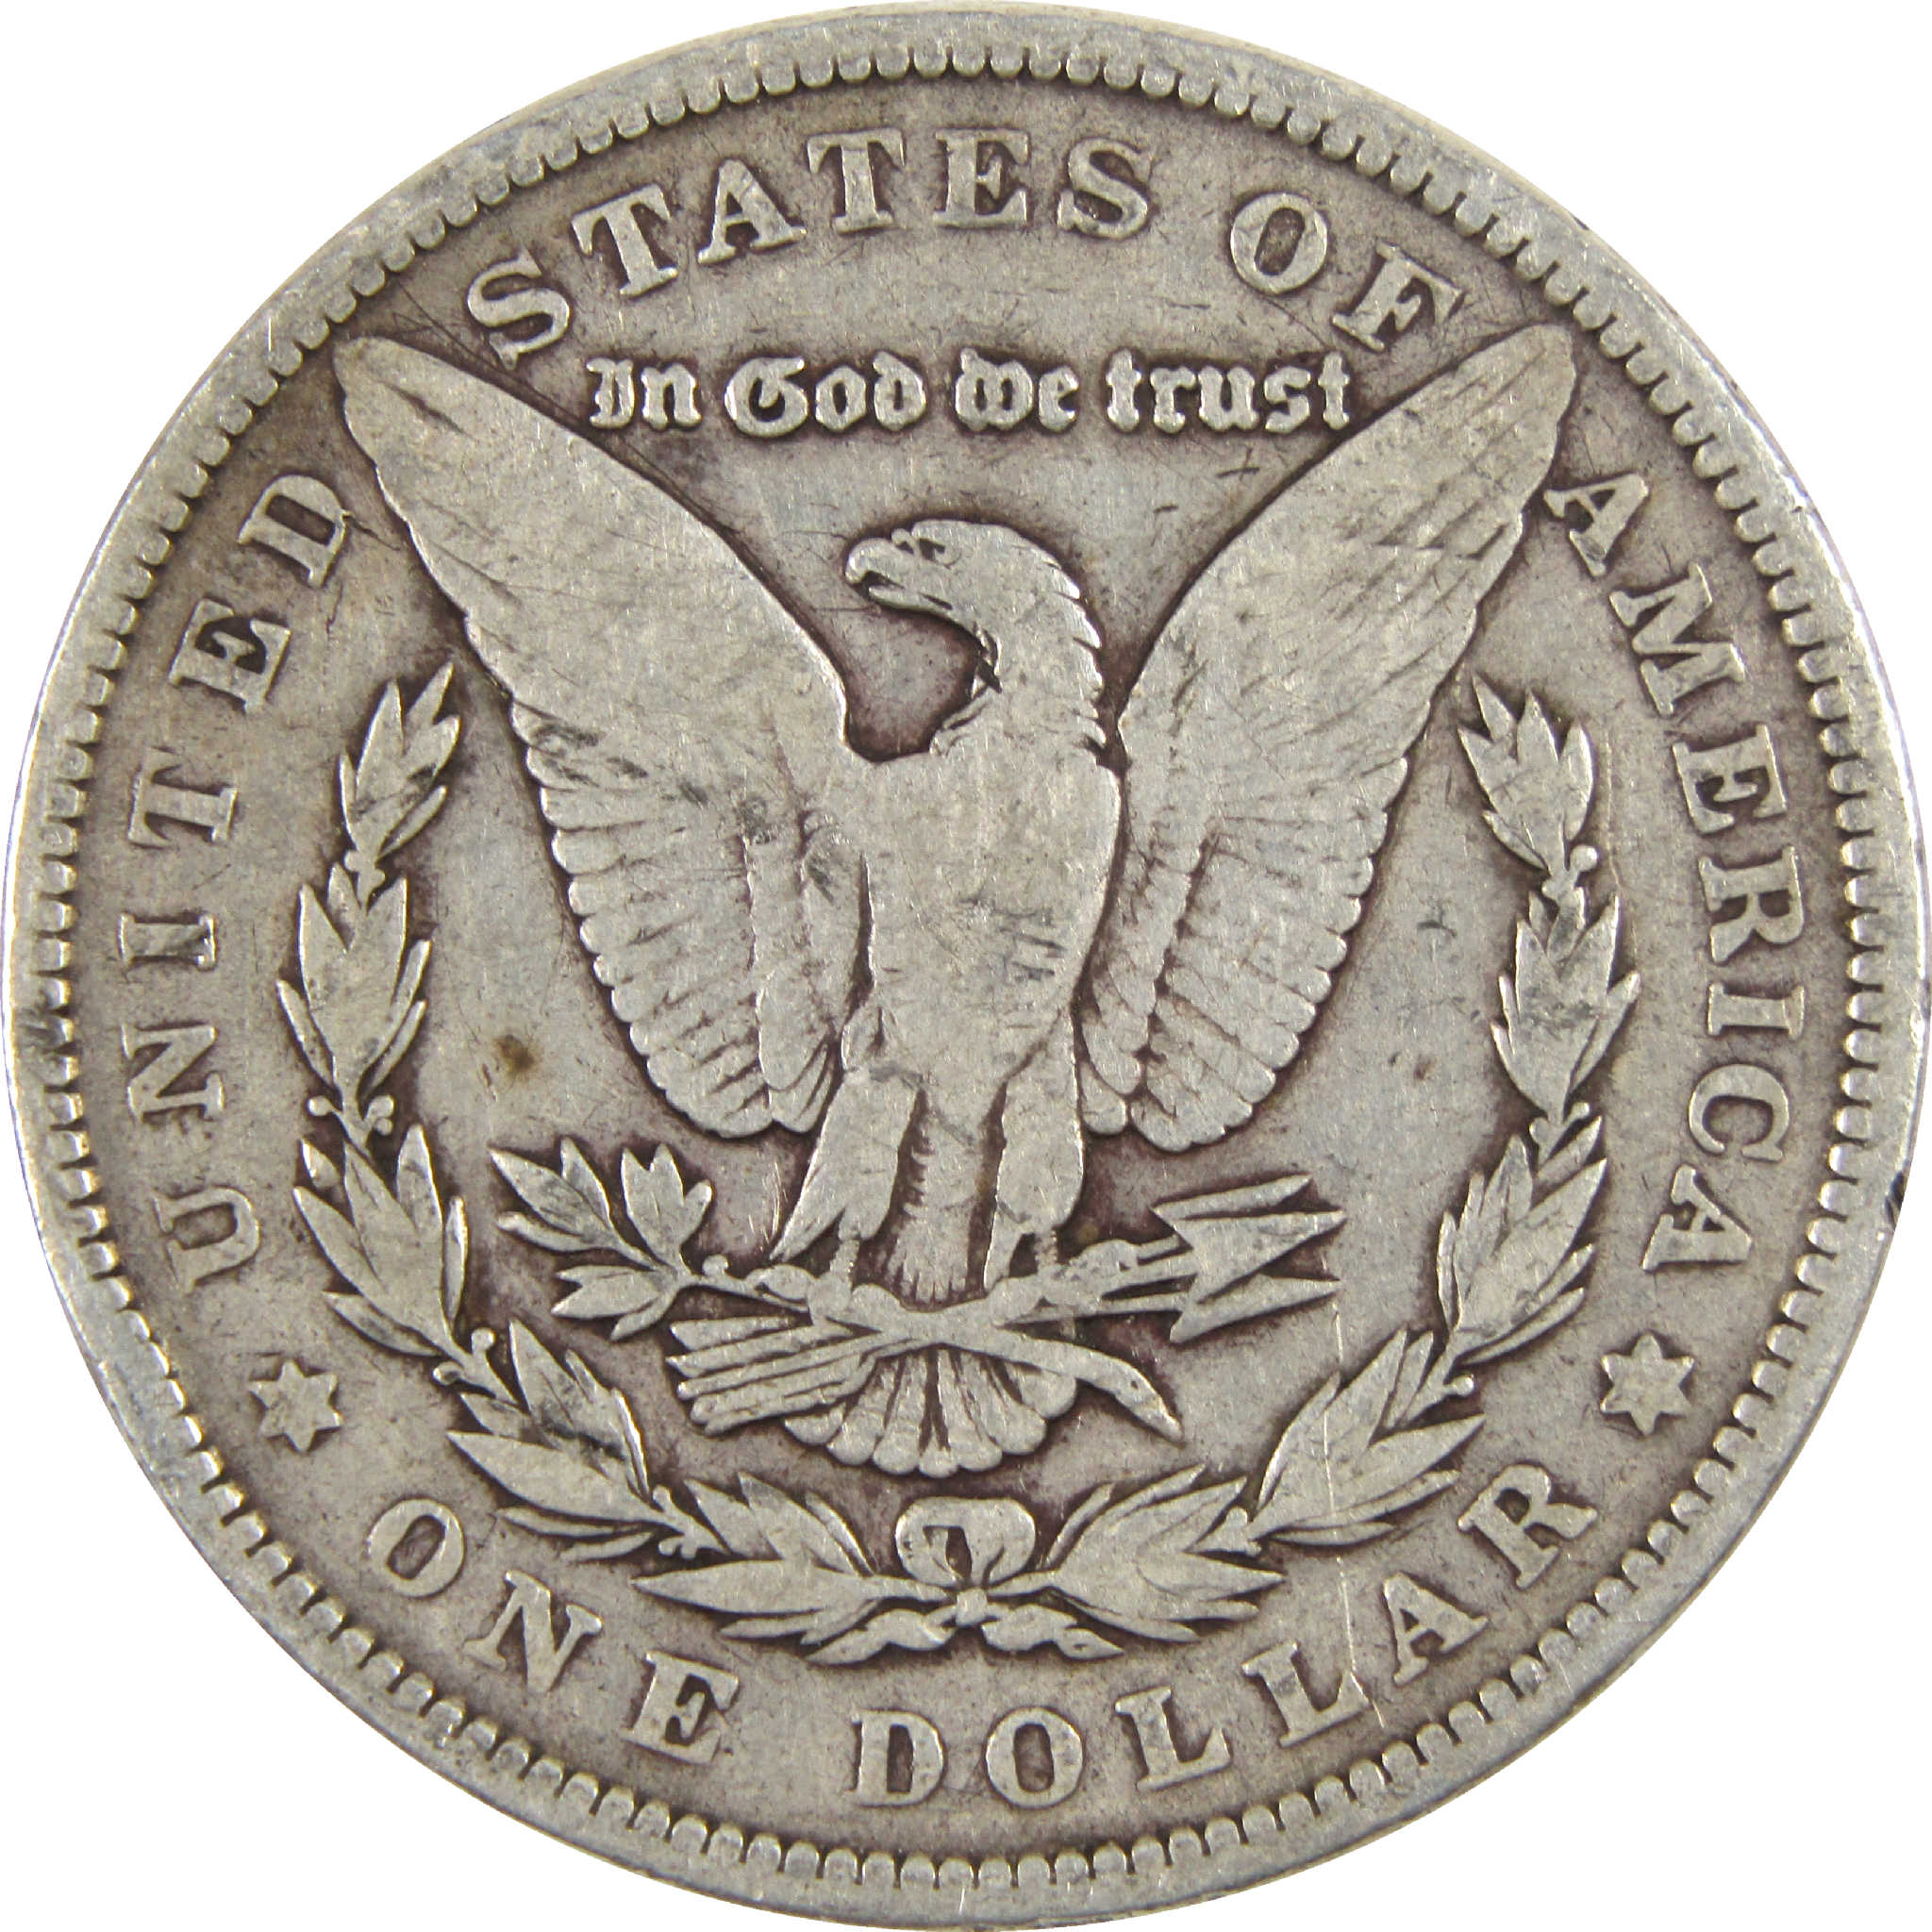 1889 Morgan Dollar VG Very Good Silver $1 Coin - Morgan coin - Morgan silver dollar - Morgan silver dollar for sale - Profile Coins &amp; Collectibles